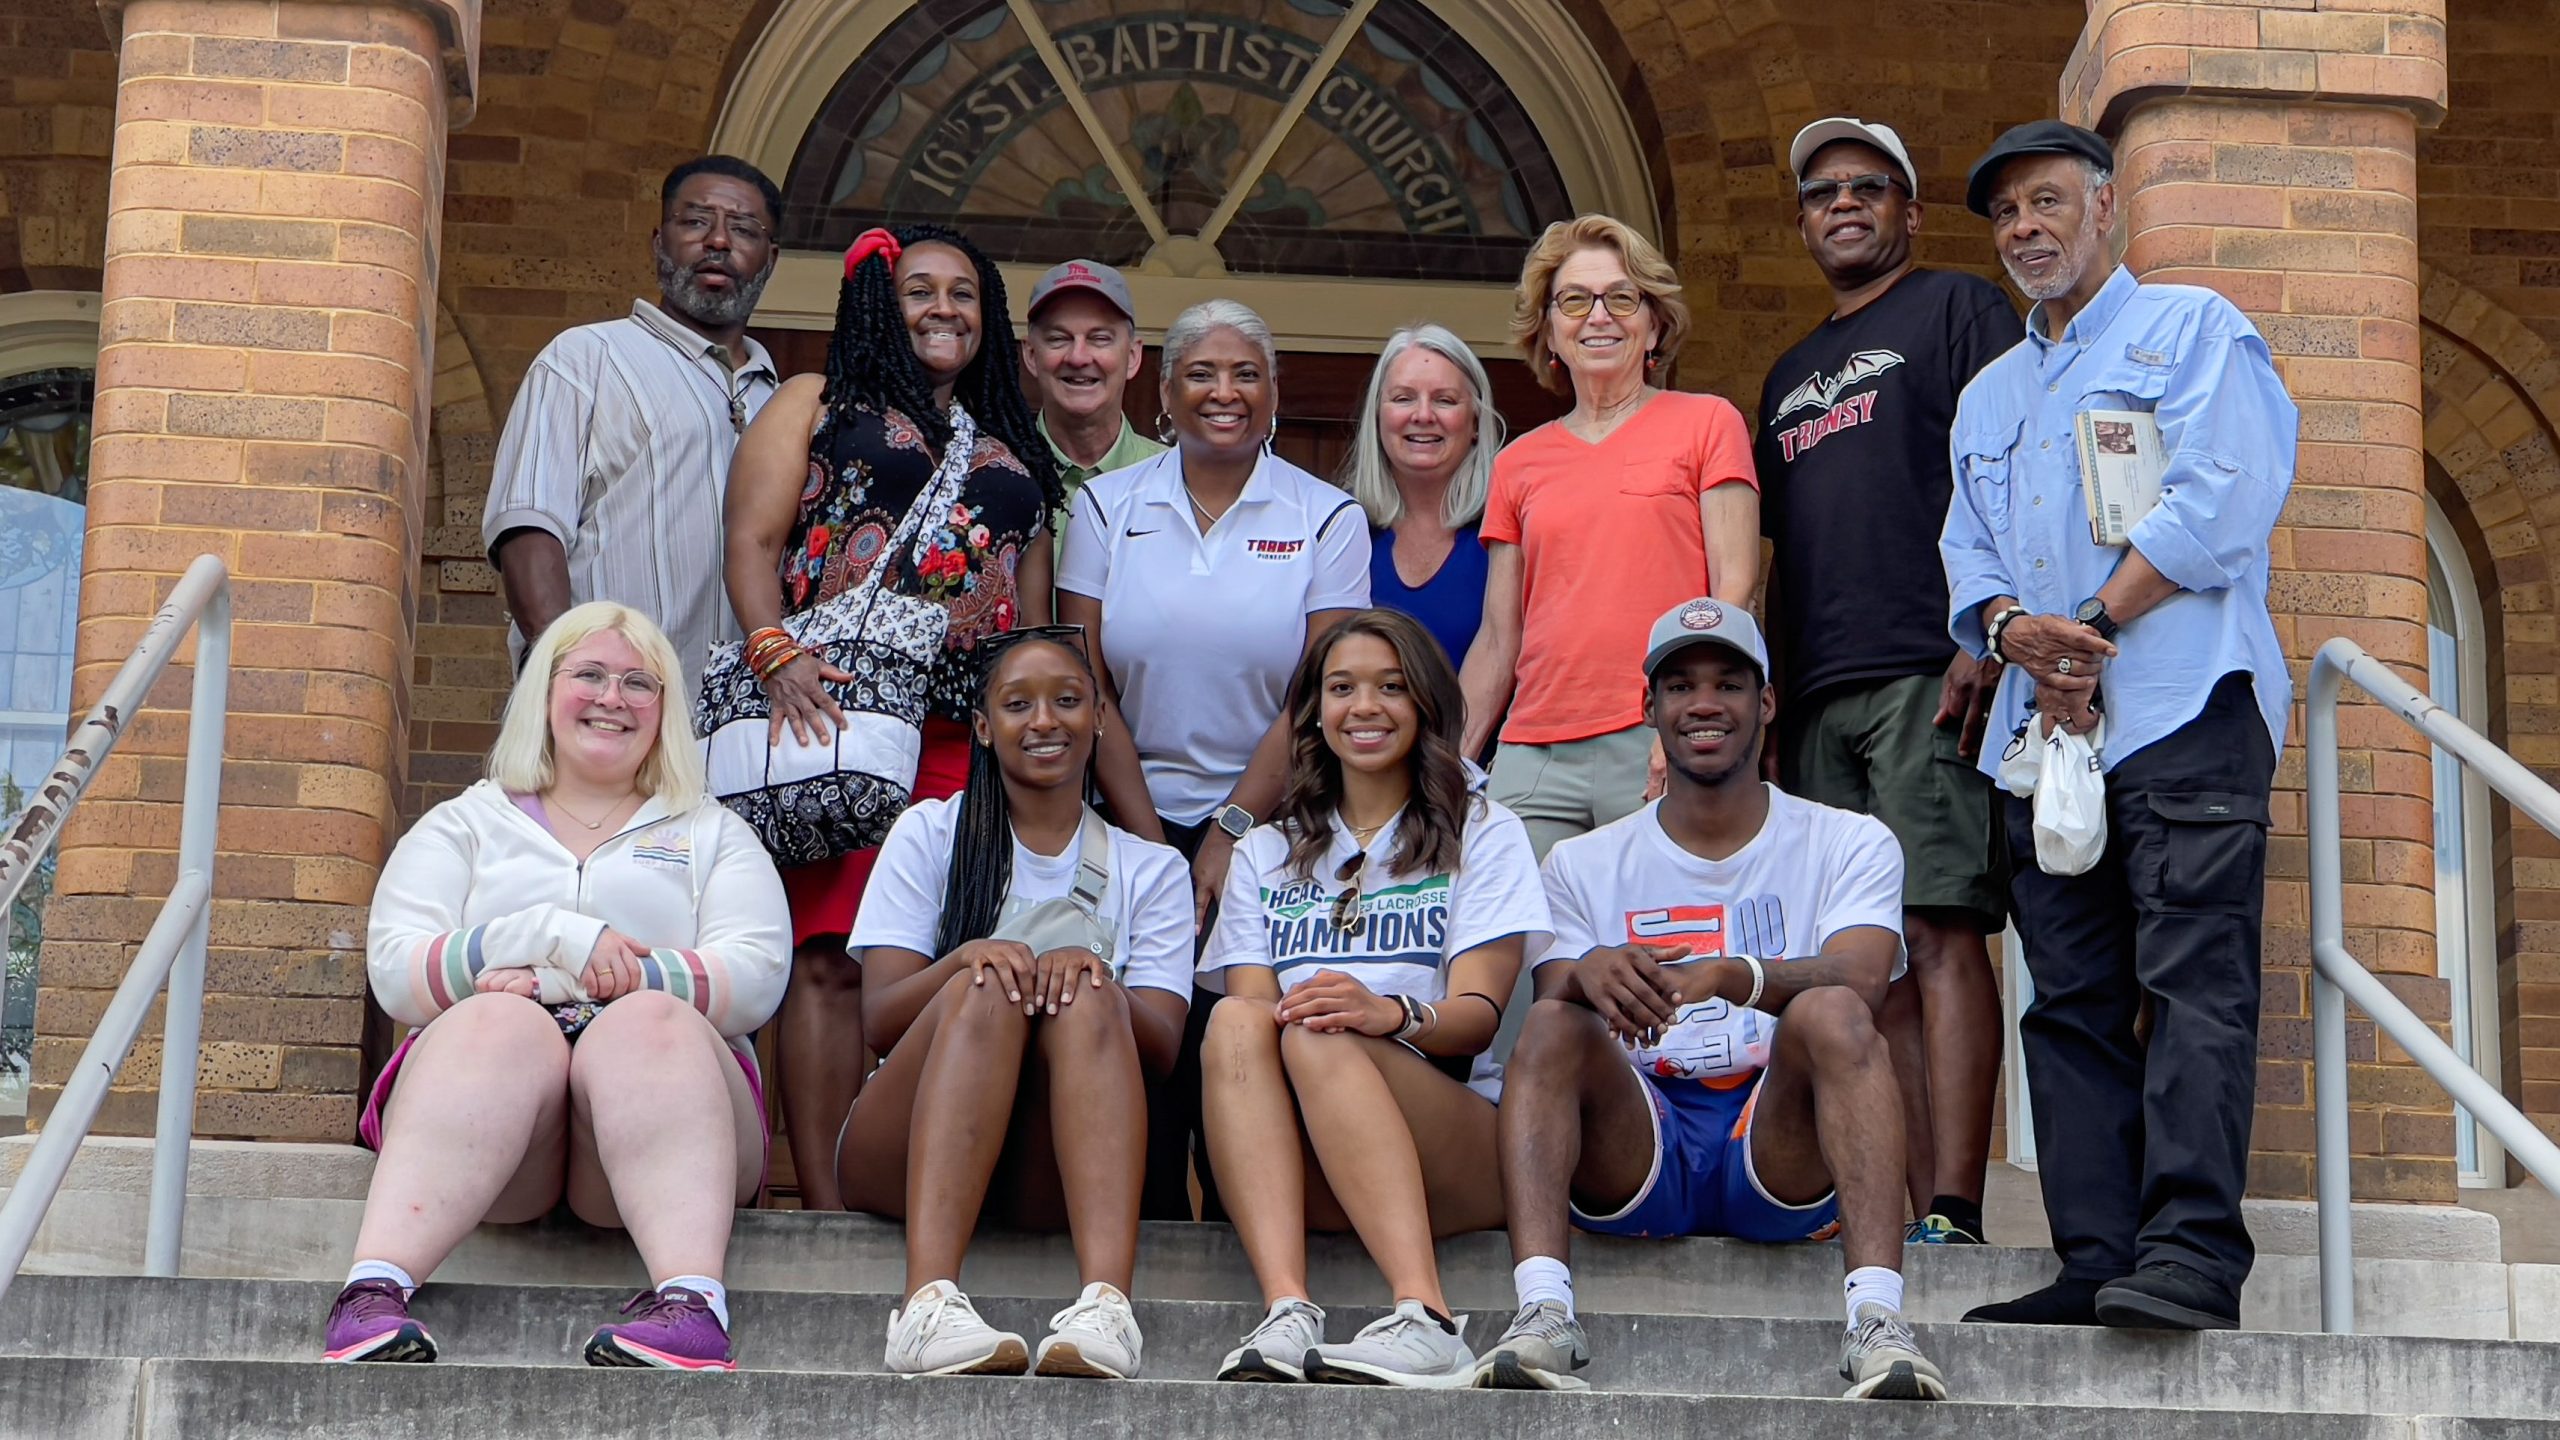 Trip participants on the Civil Rights tour